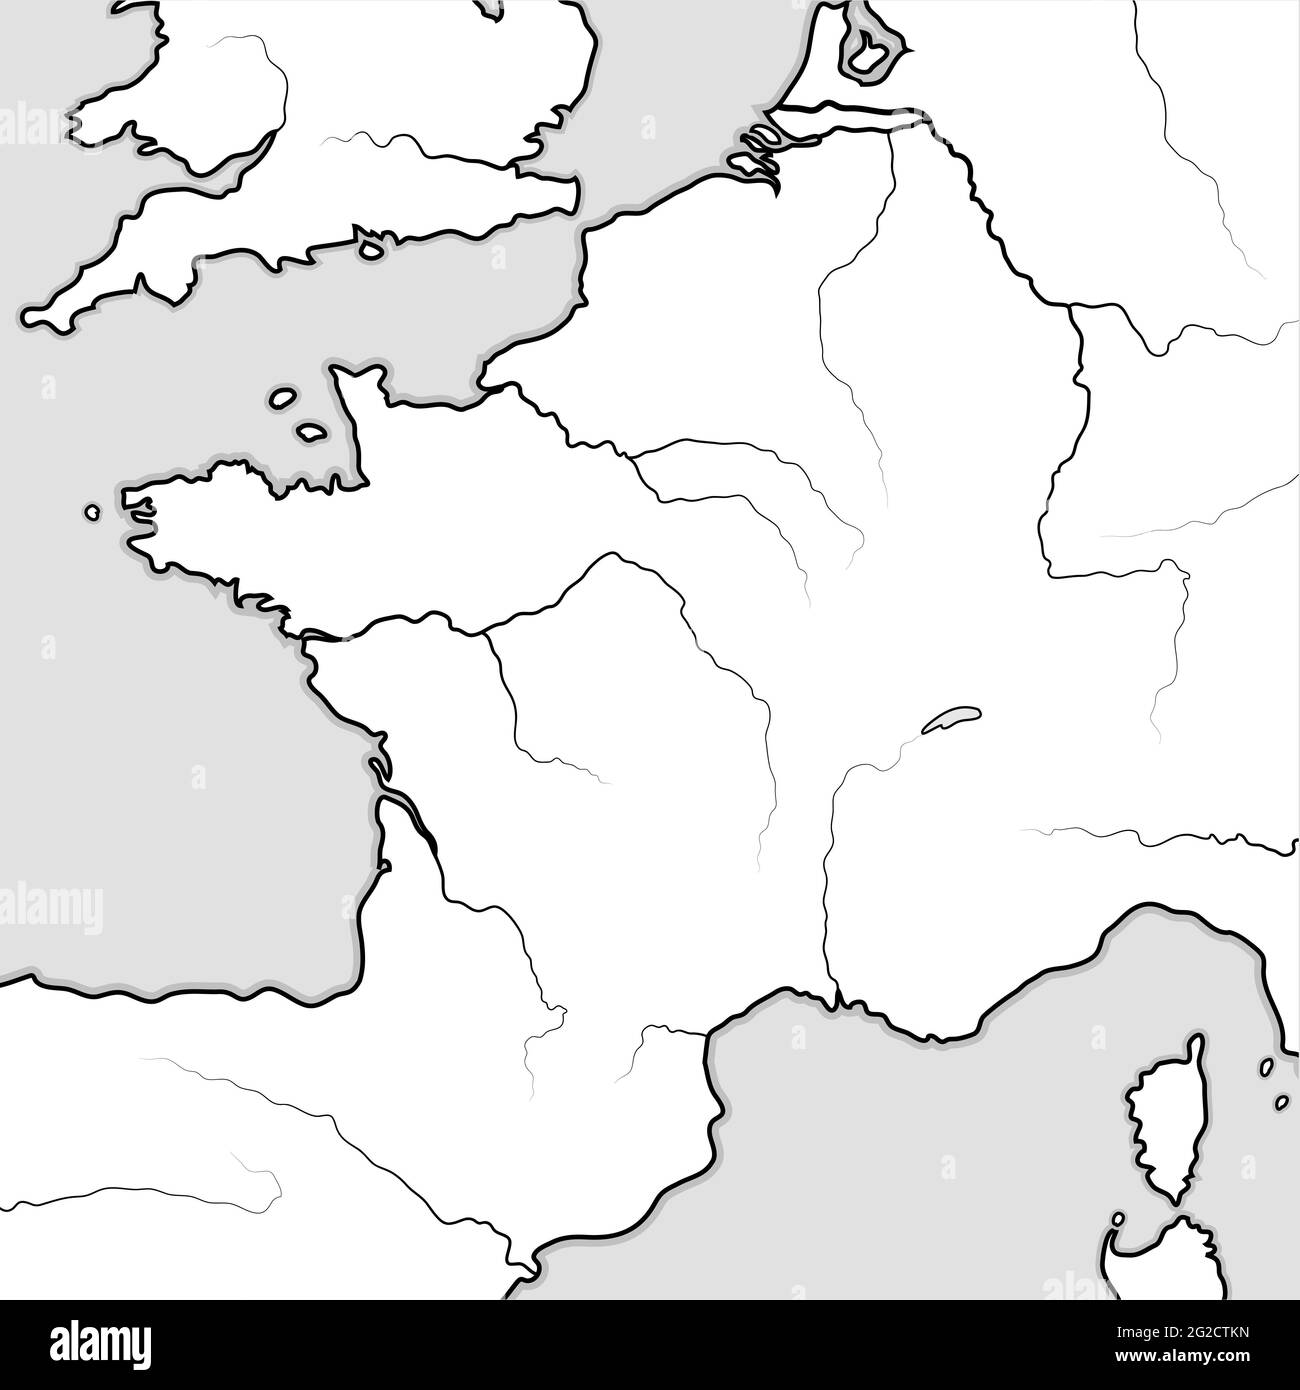 Karte der FRANZÖSISCHEN Länder: Frankreich, Provence, Normandie, Lothringen. Geografische Karte. Stockfoto